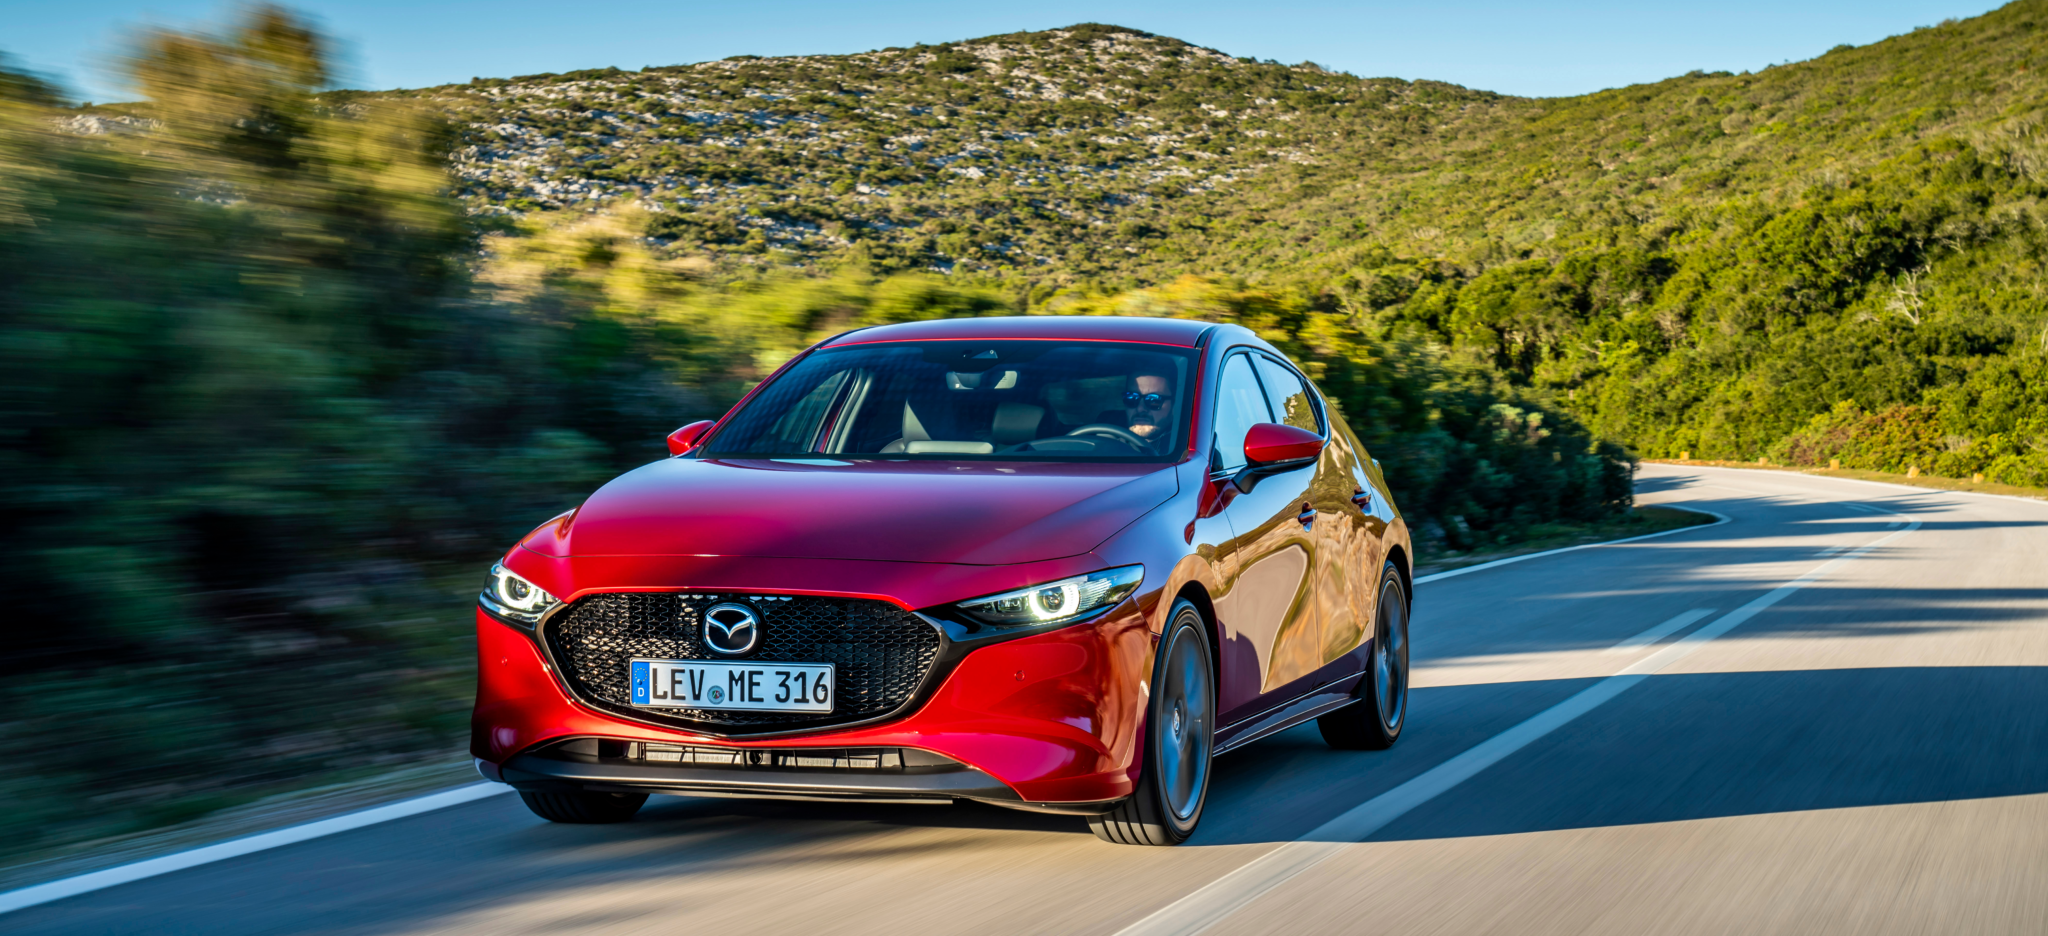 Mazda3 HB SoulRedCrystal Action 1 - Mazda lanzará coches eléctricos e híbridos enchufables